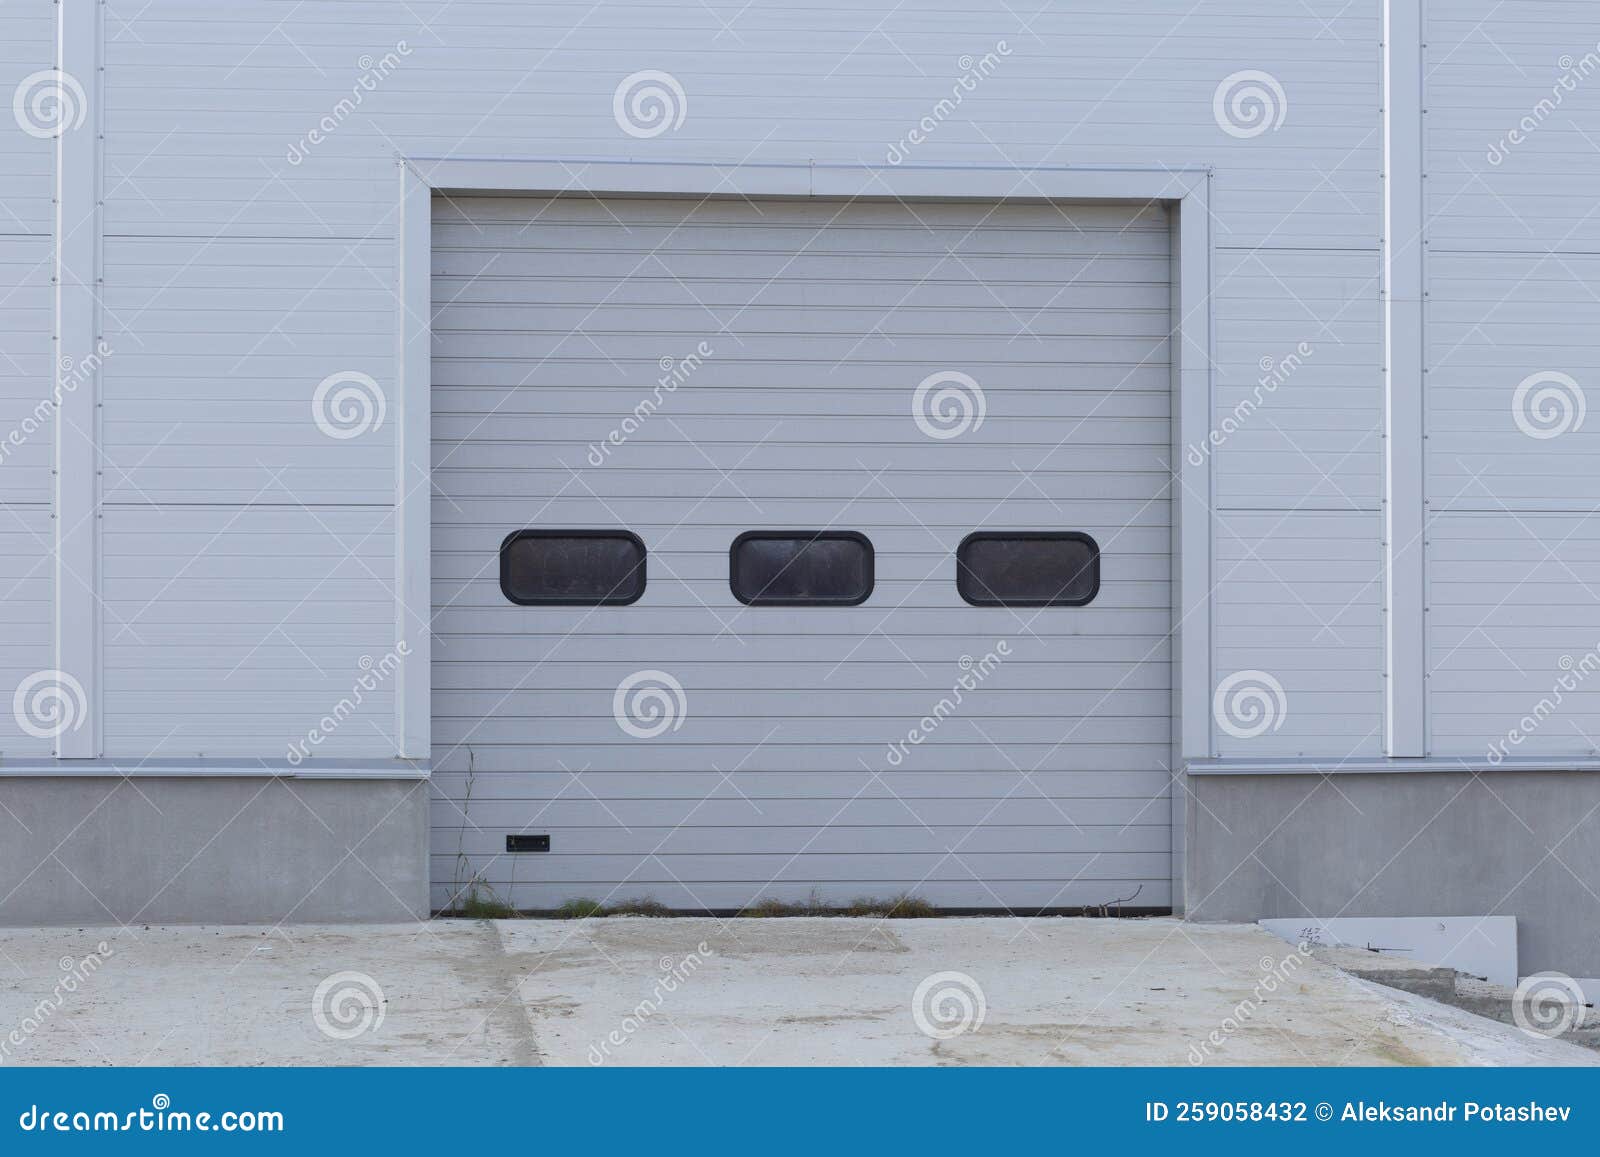 Portes De Garage. Volets Roulants, Porte De Rangement De Garage, Protection  De La Maison Et Du Garage Photo stock - Image du étage, métal: 259058432